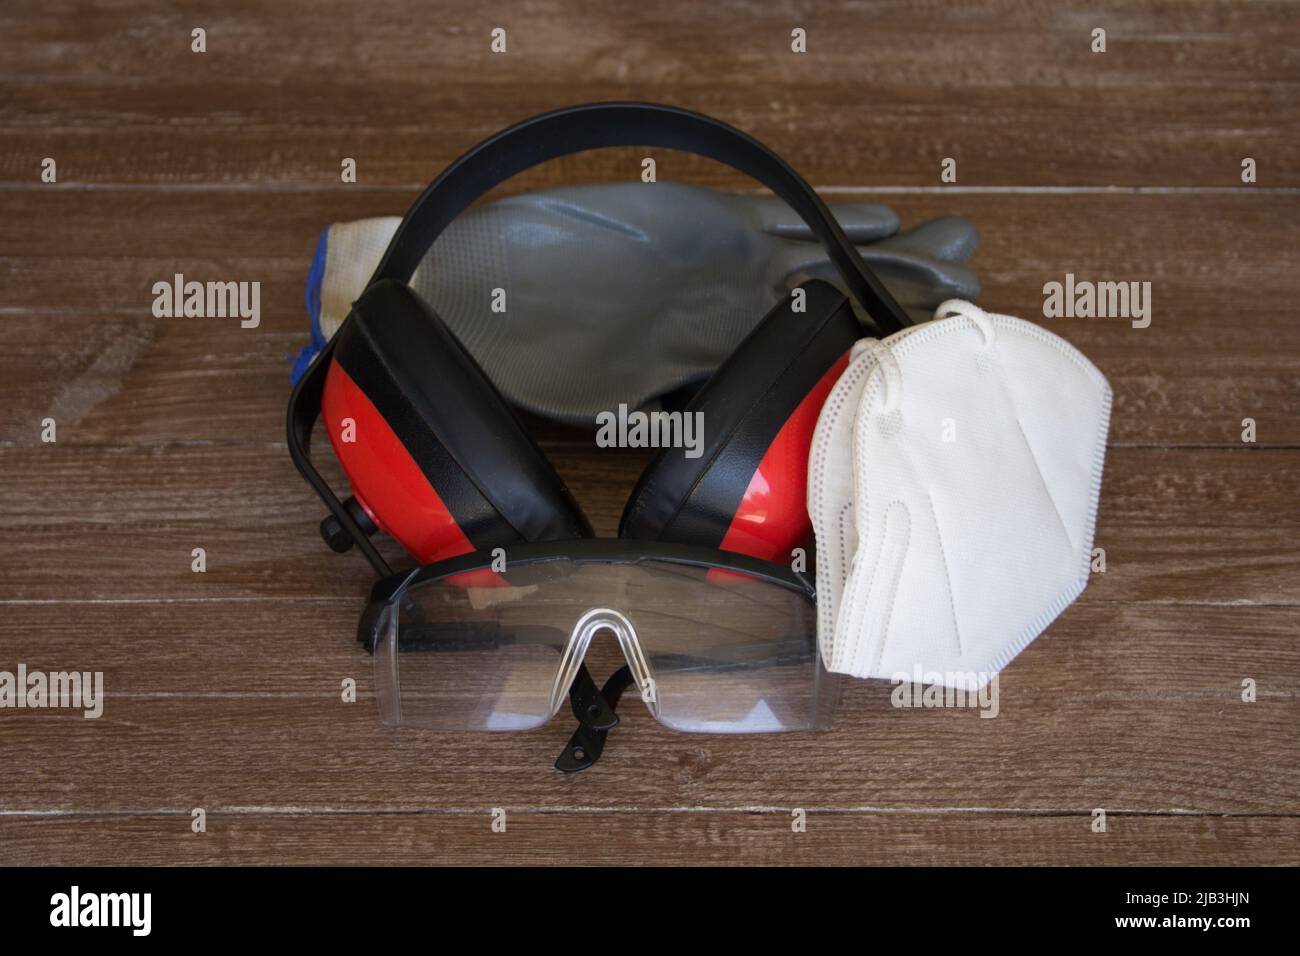 Image des gants, des lunettes, des écouteurs et du masque représentation de l'équipement de protection individuelle à utiliser sur le lieu de travail Banque D'Images